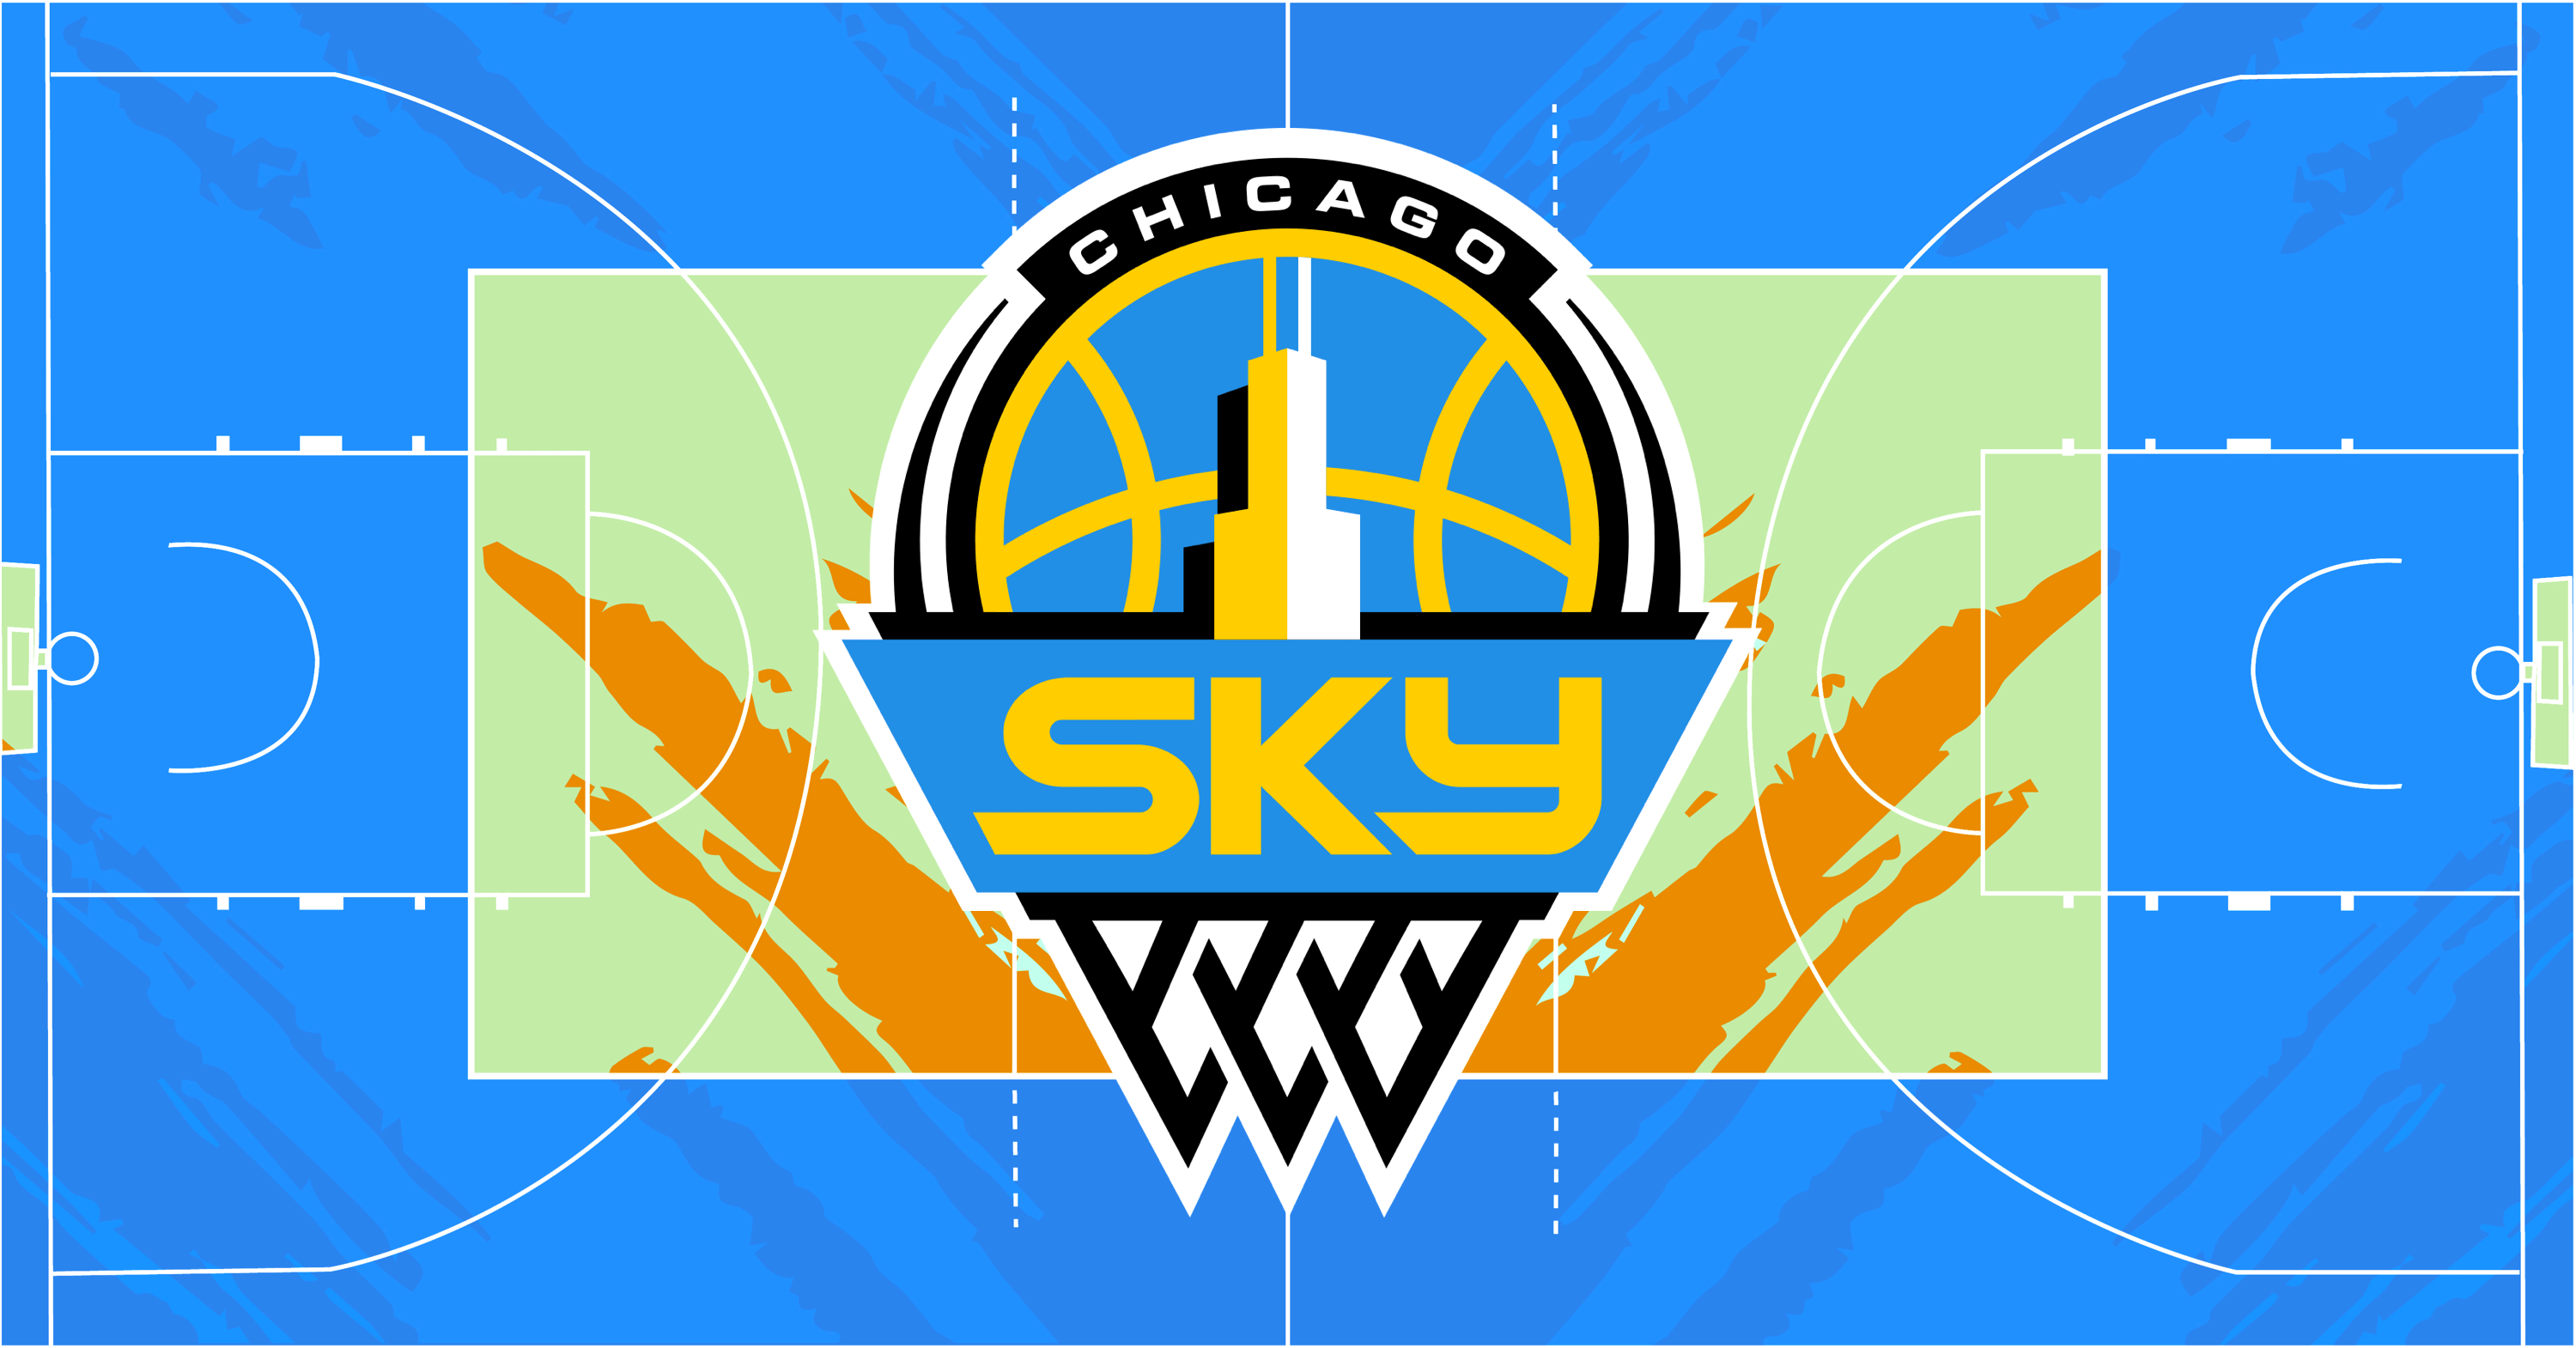 Chicago Sky: Meet the new-look roster, Wintrust Arena info